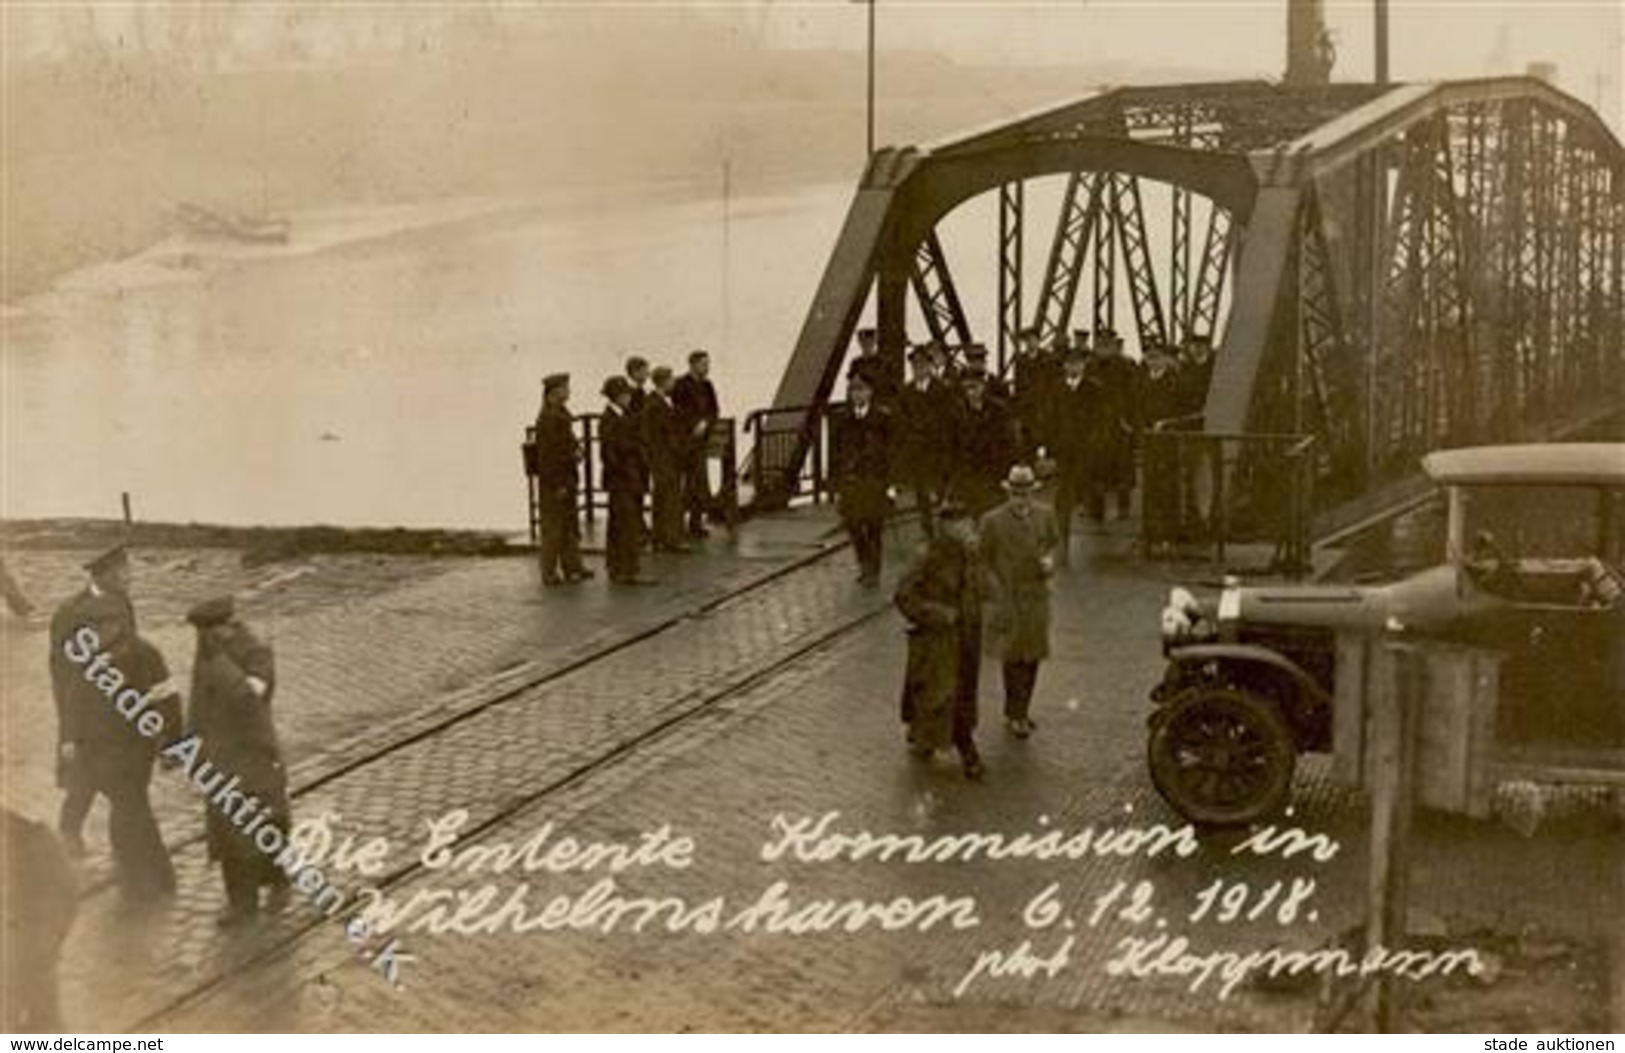 REVOLUTION WILHELMSHAVEN 1918 - Die ENTENTE KOMMISSION In Wilhelmshaven 6.12.1918 - Photo Kloppmmann I-II - Guerra